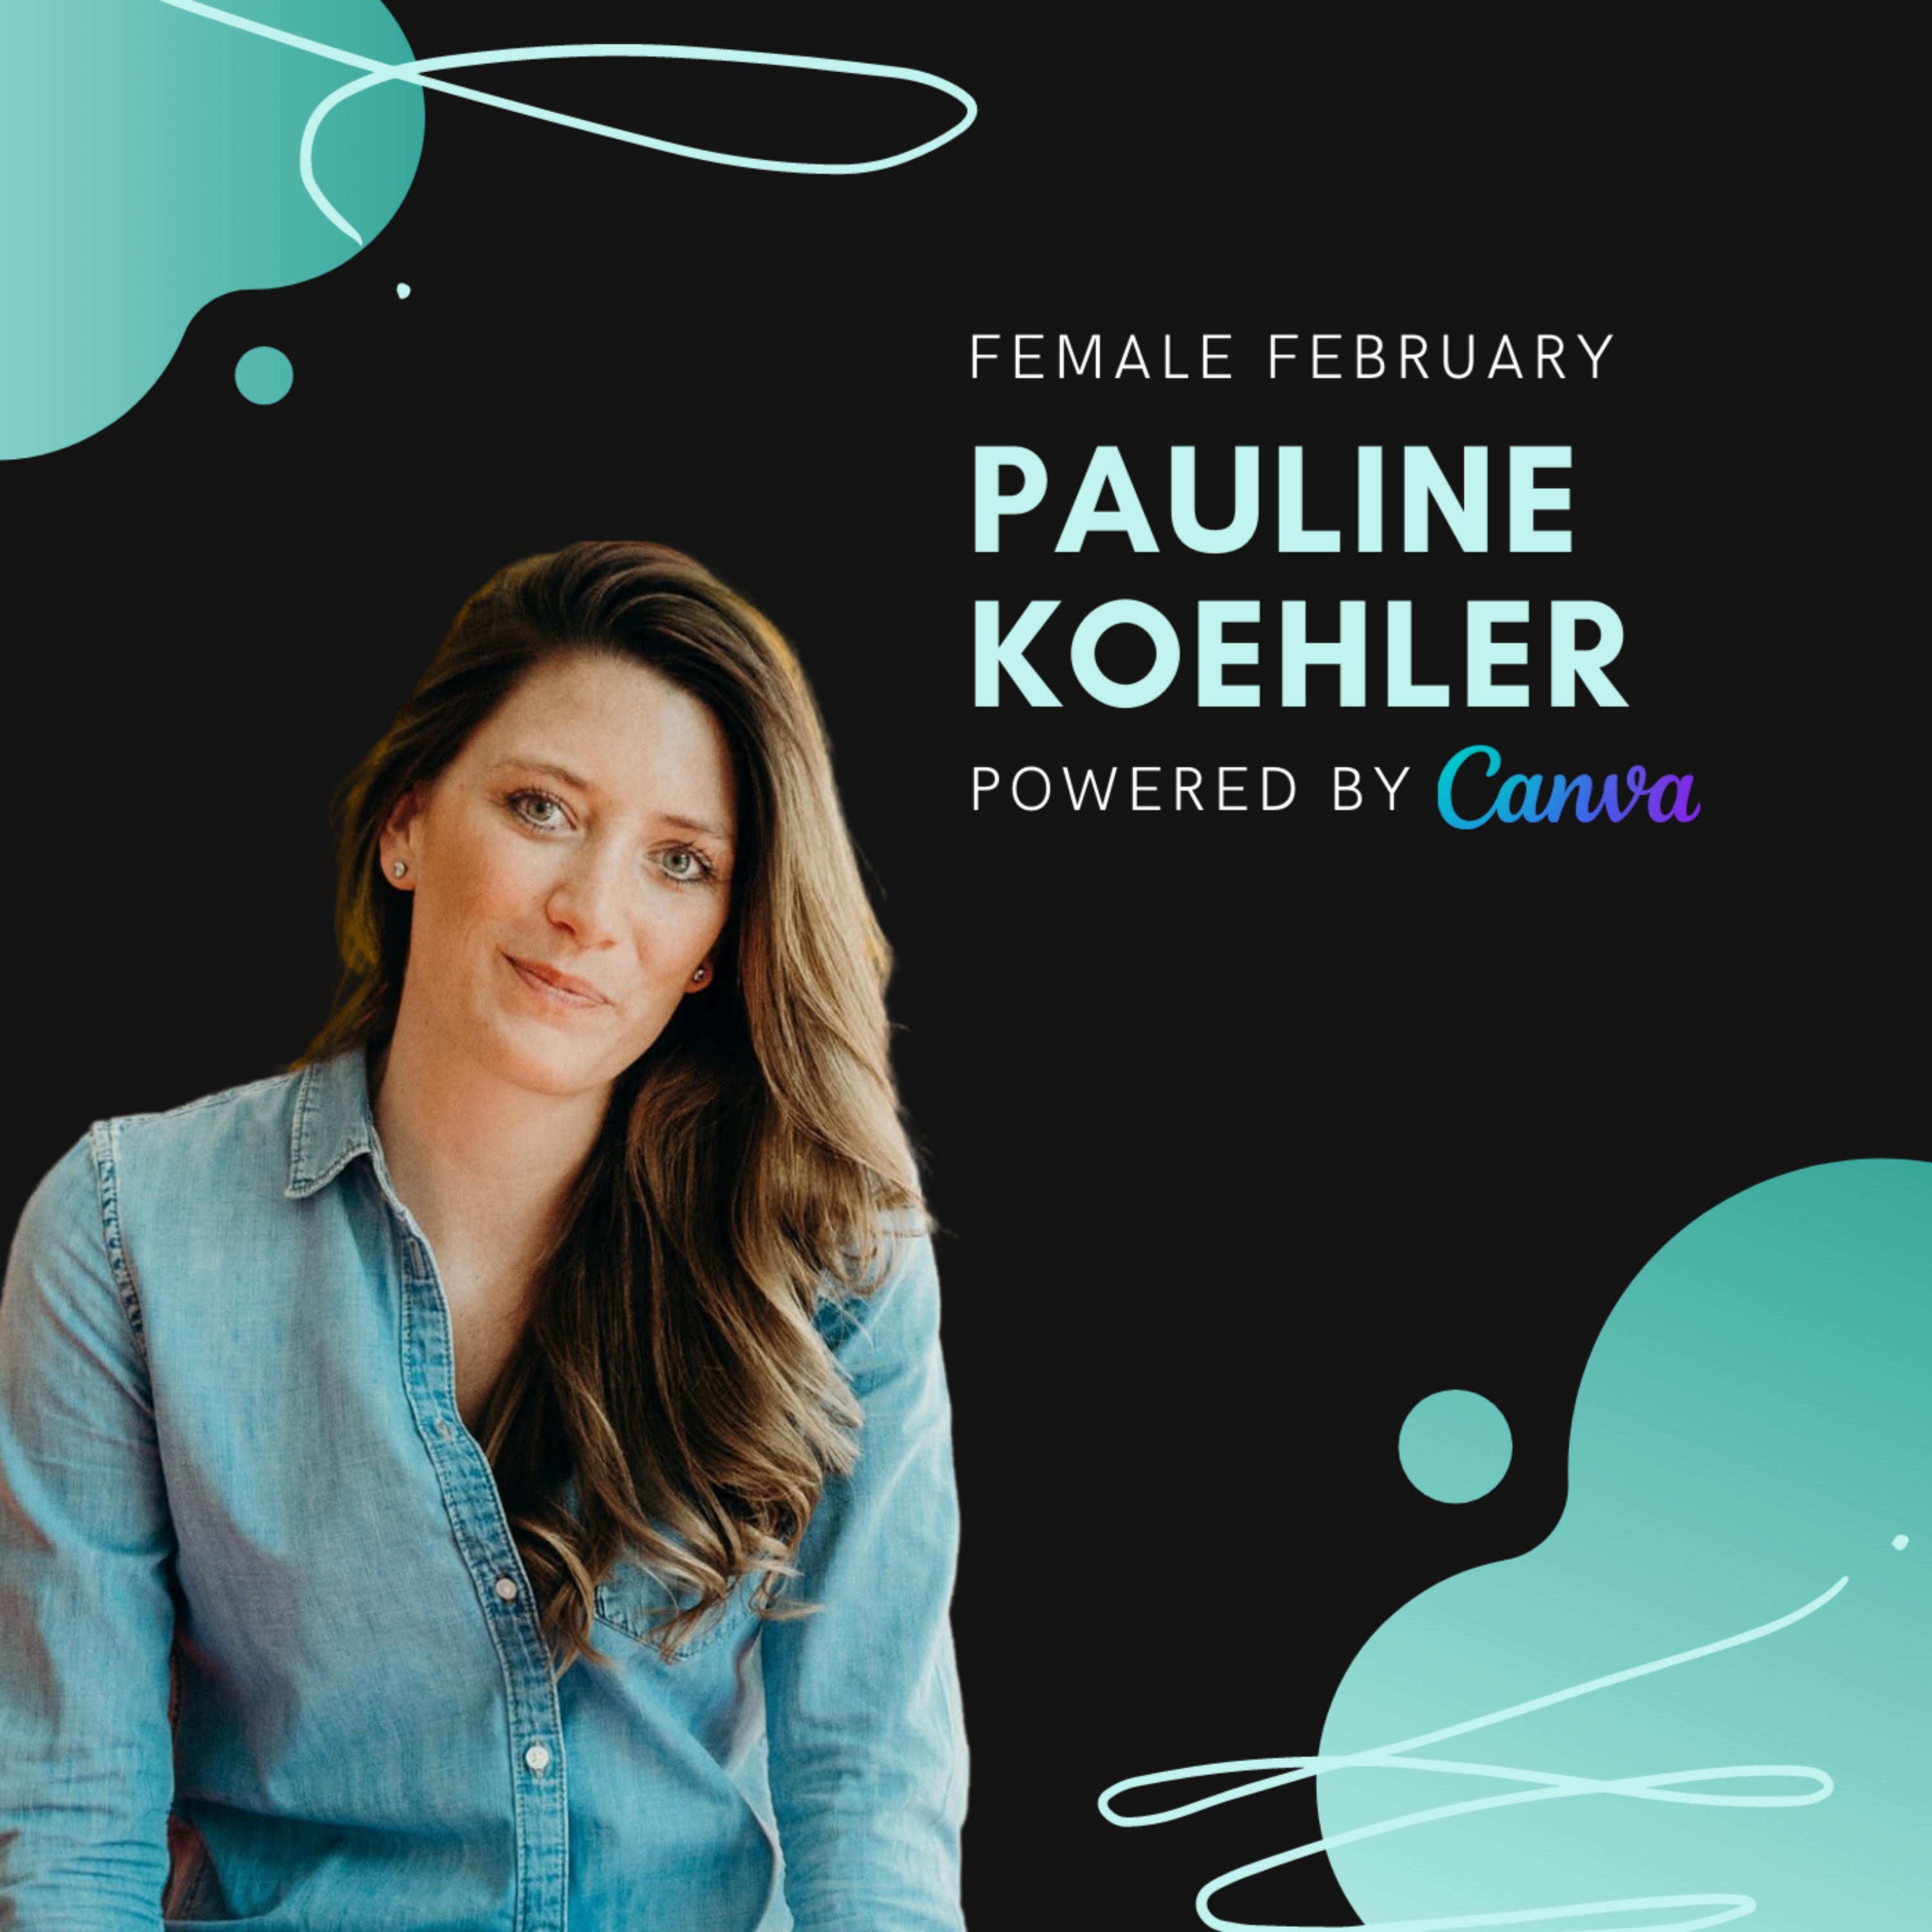 Pauline Koehler, WeddyPlace | Female February